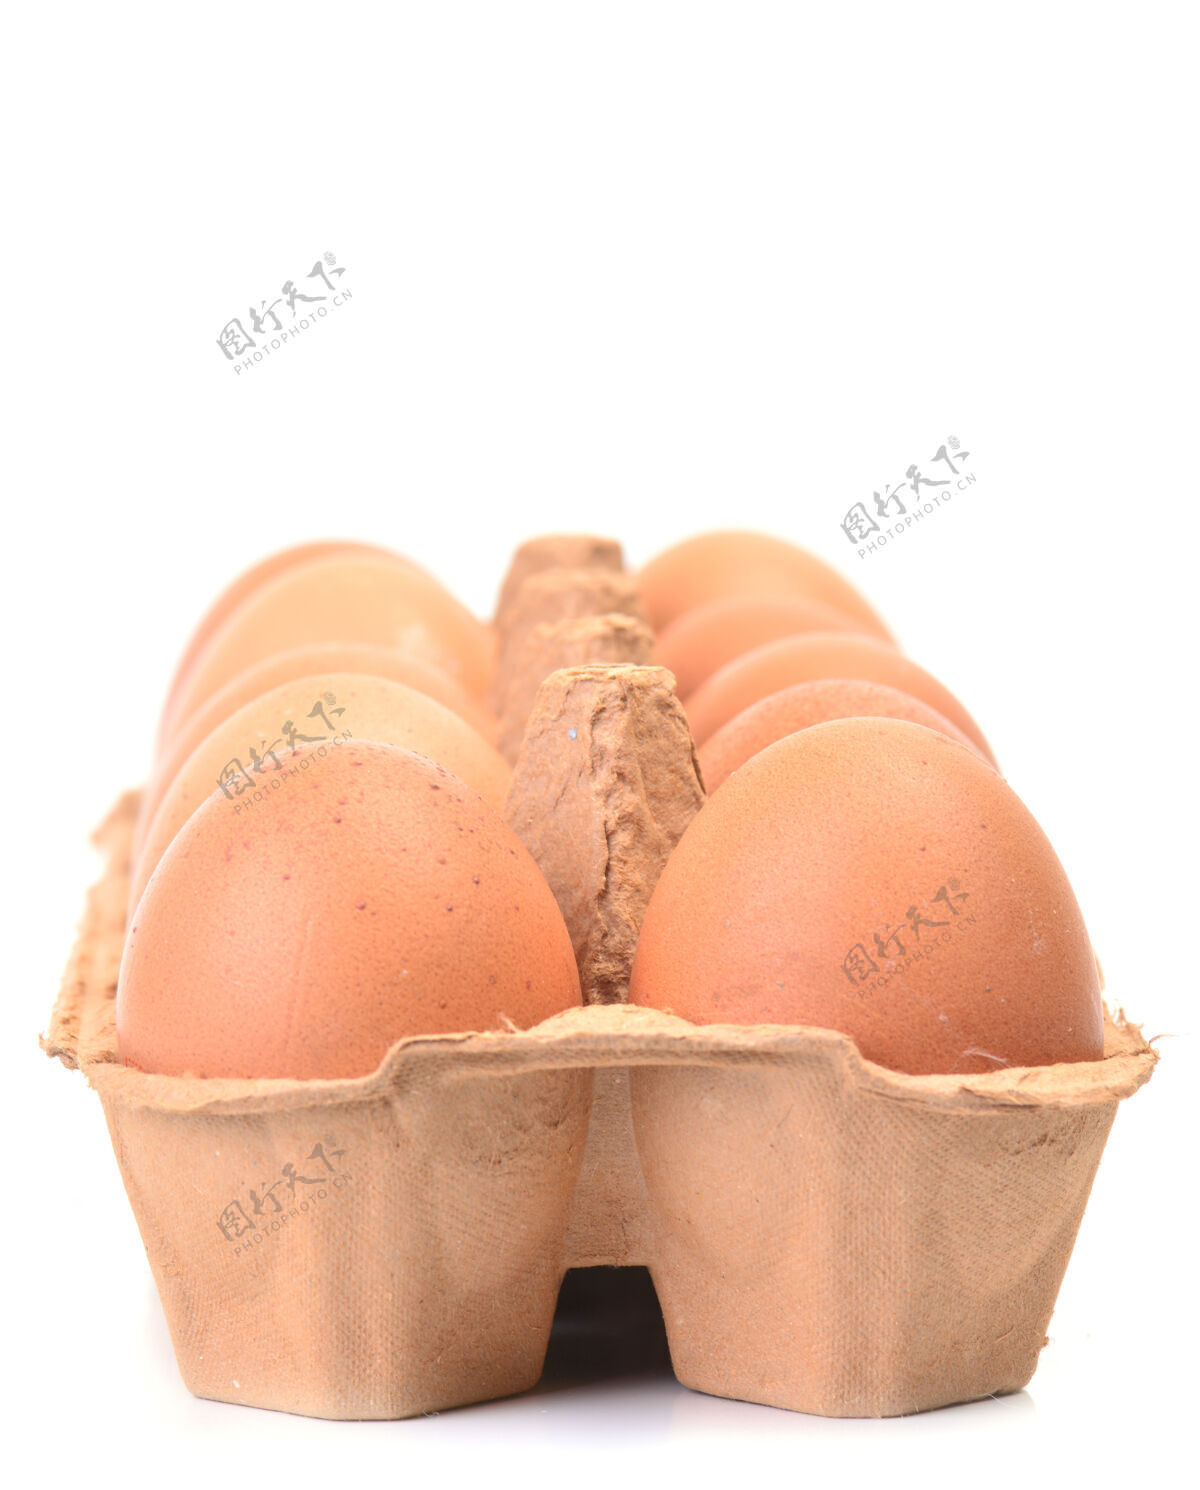 蛋清新鲜的鸡蛋支架椭圆形正面